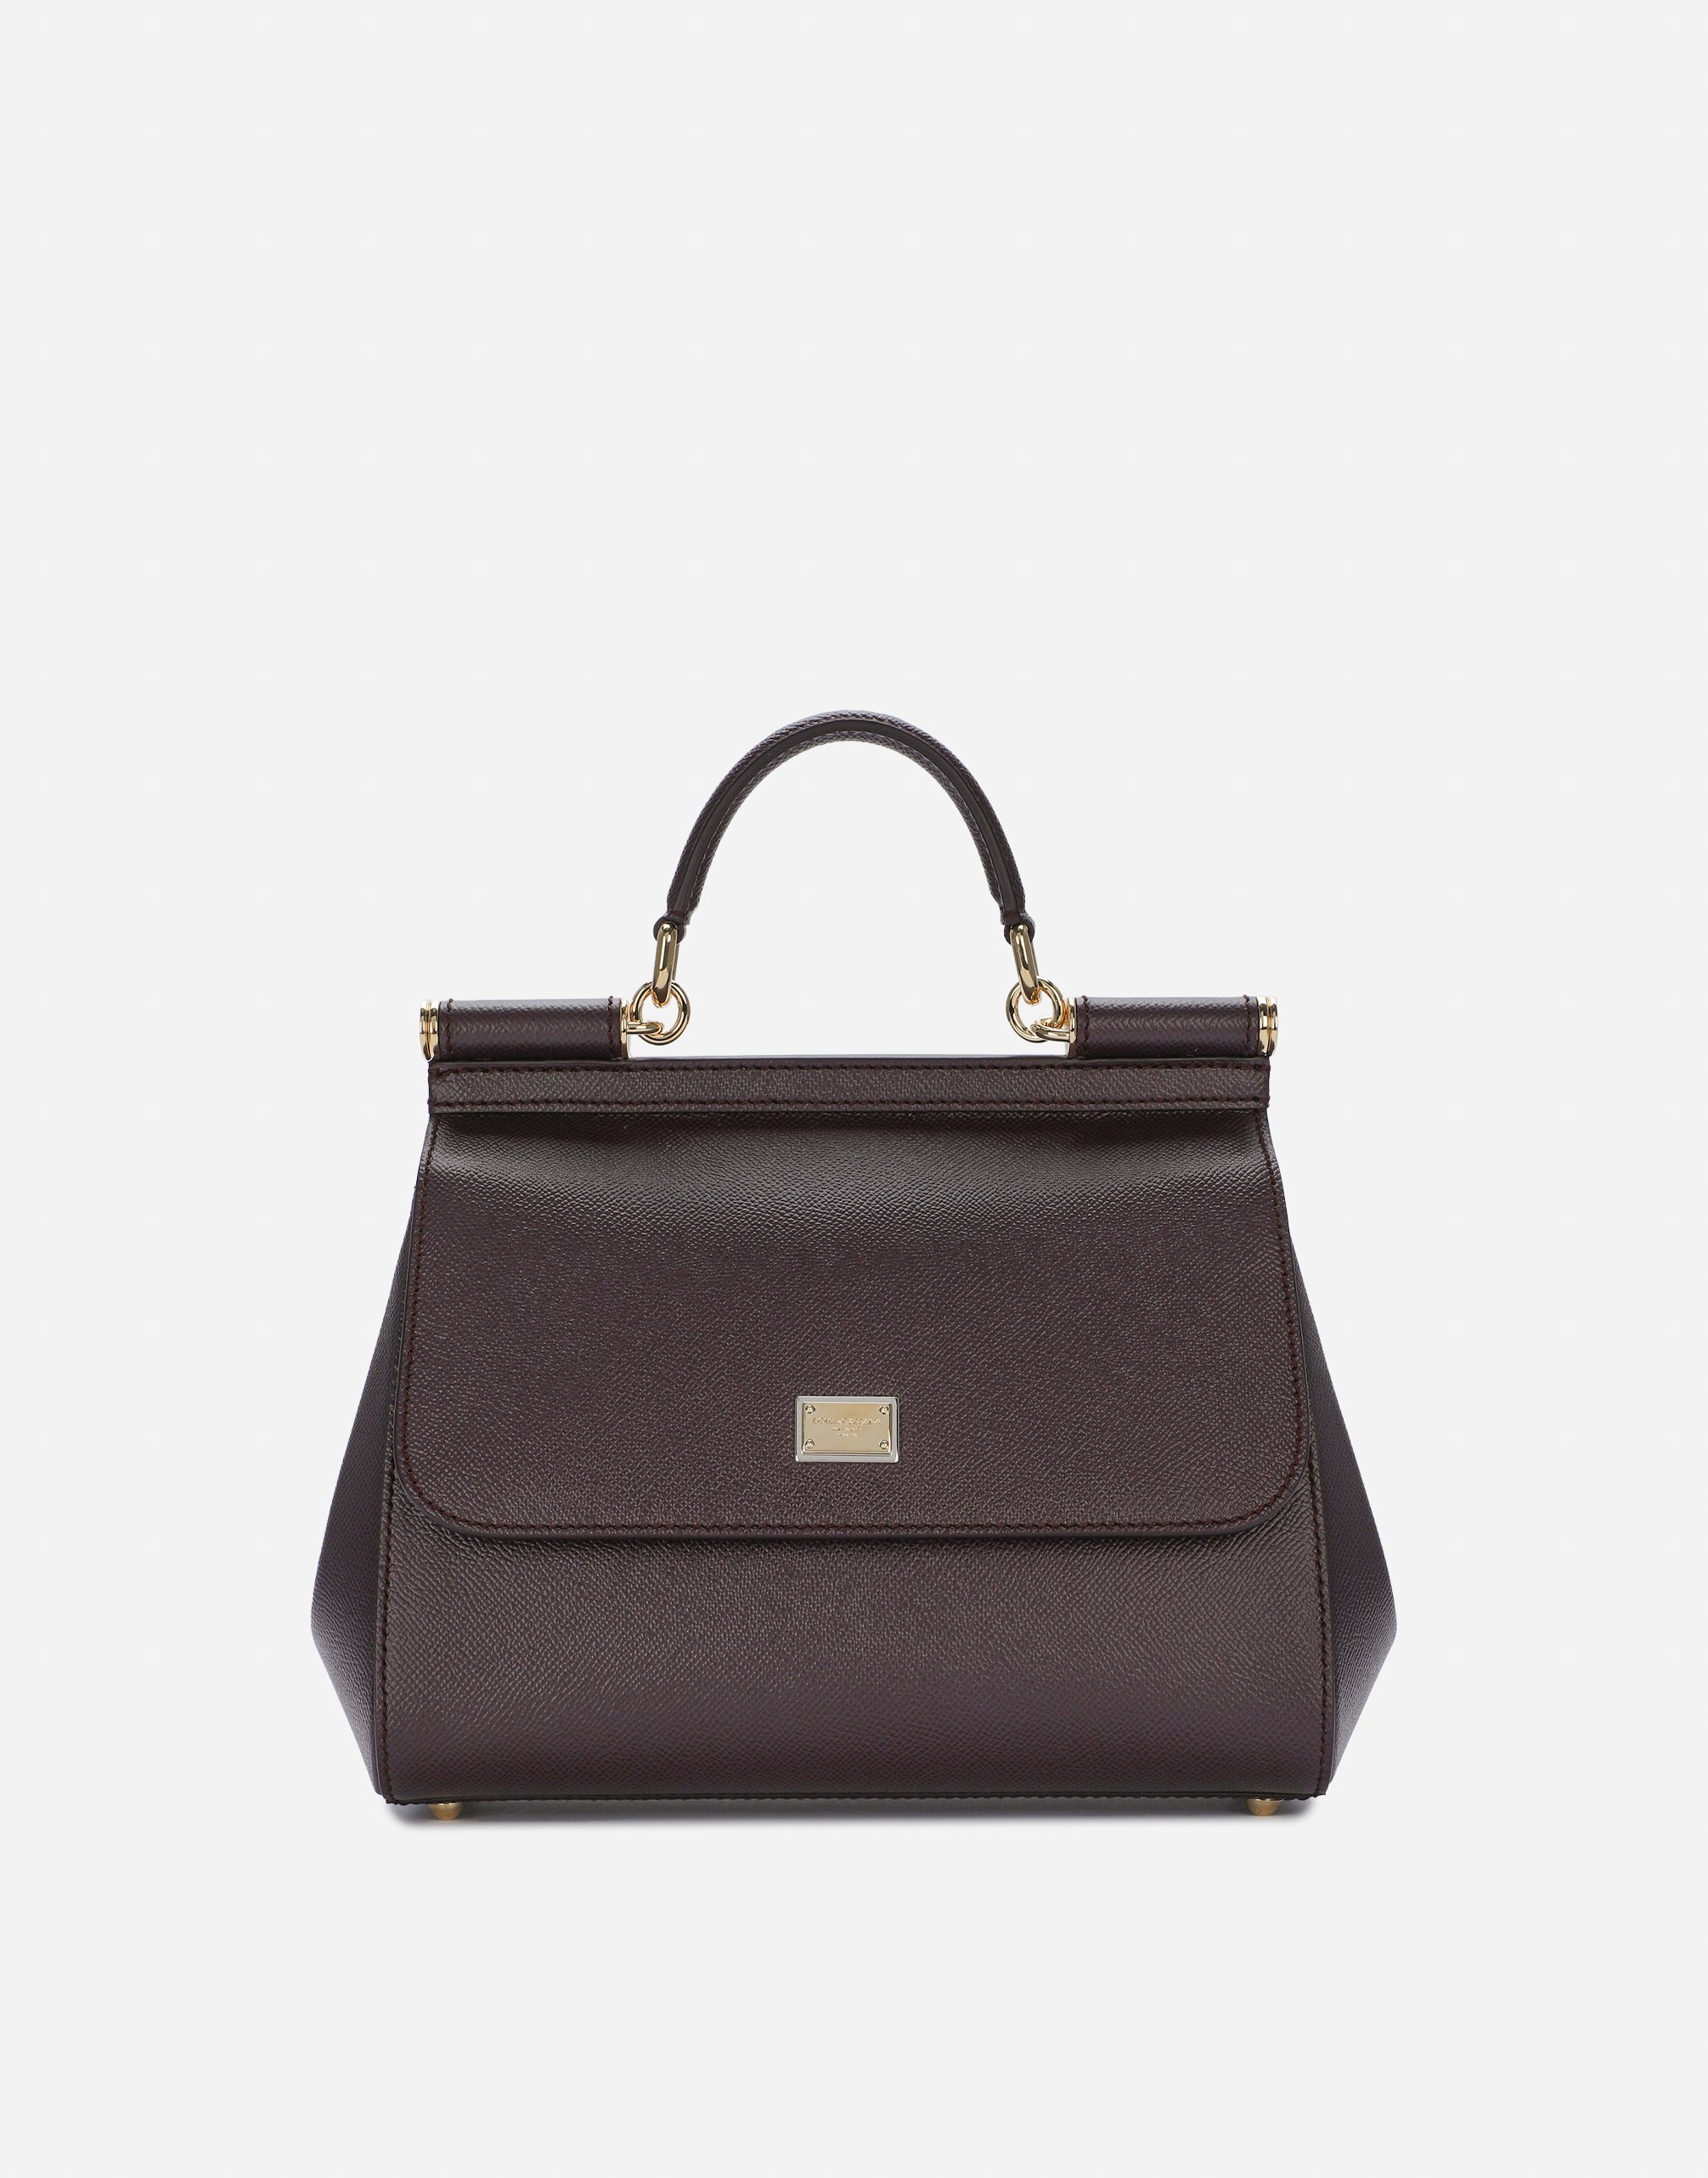 Medium Sicily handbag in dauphine leather in Bordeaux